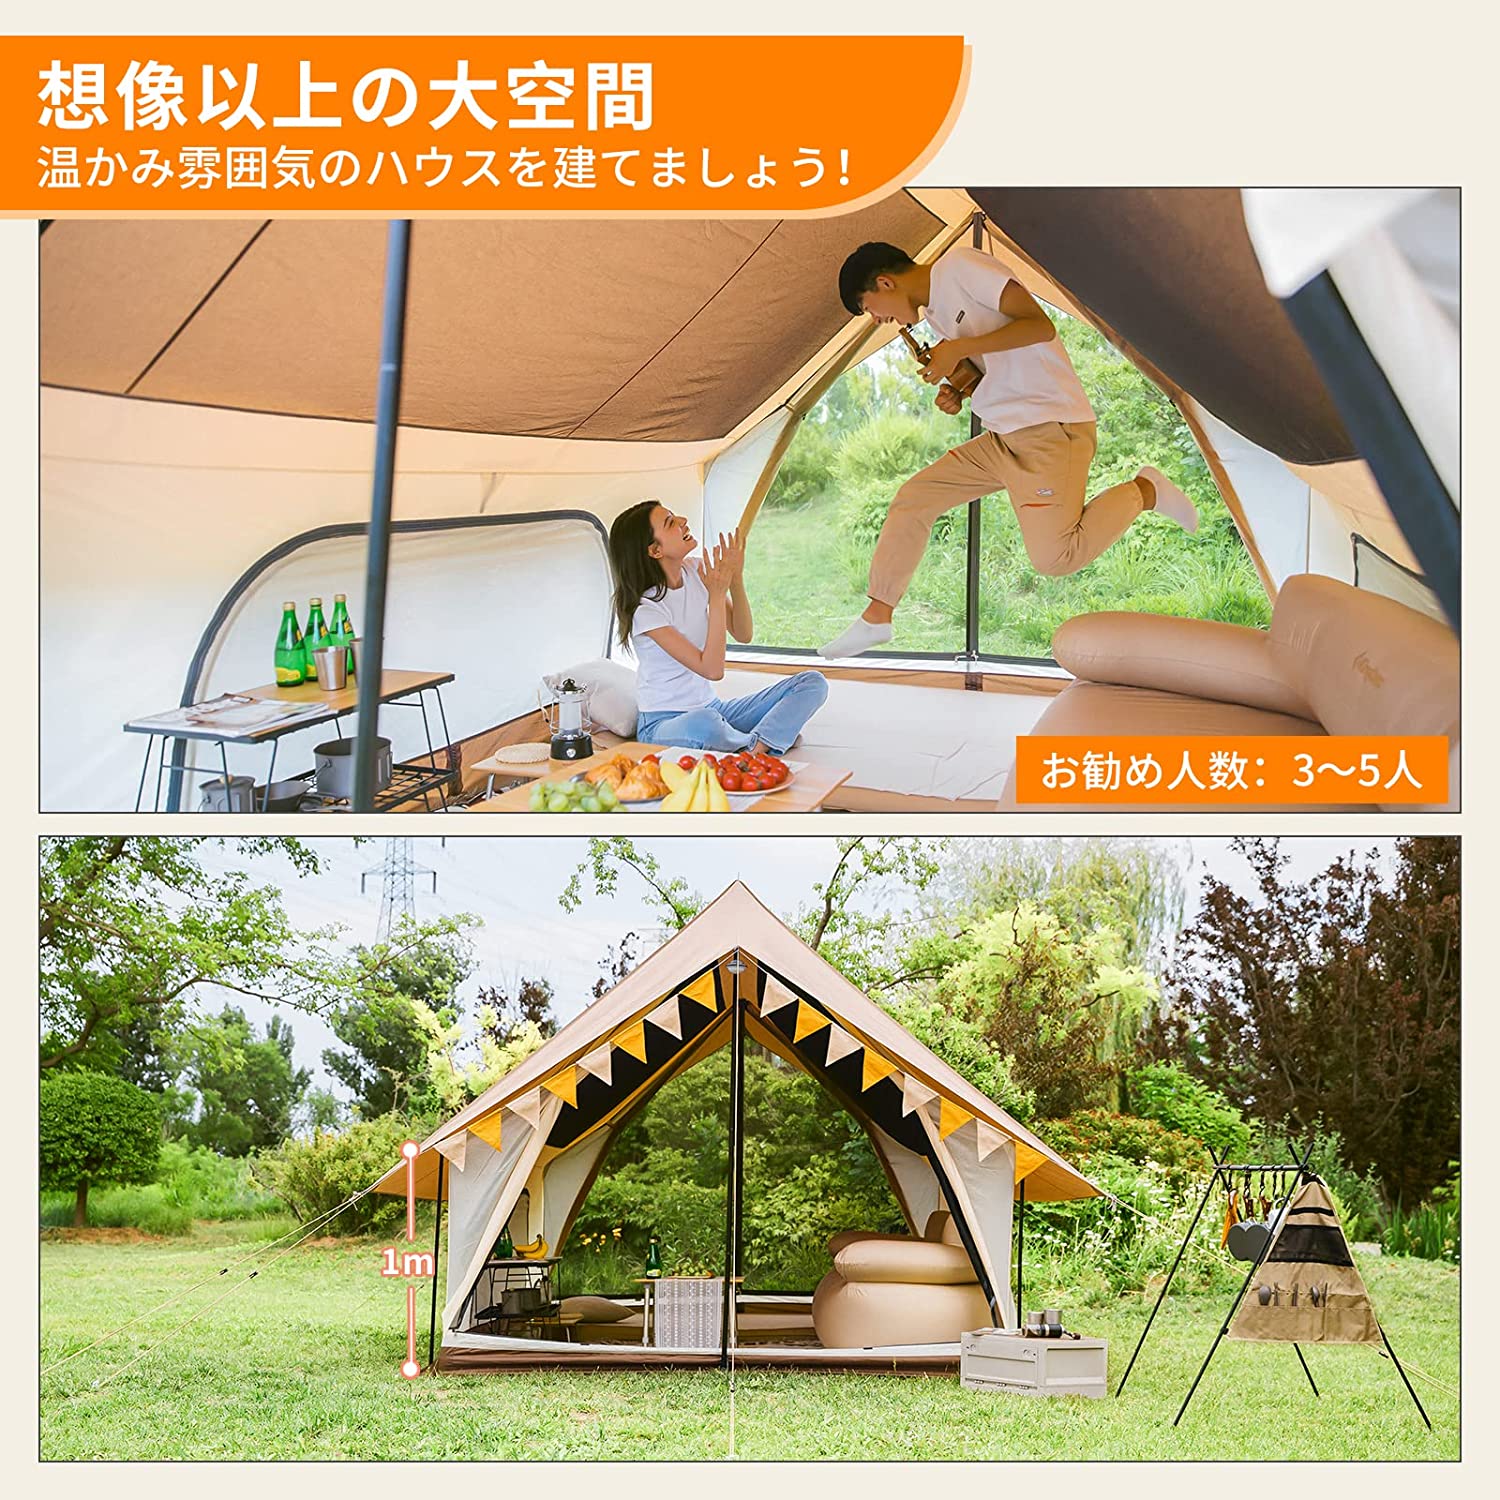 【色: カーキ】KingCamp 防水タープ キャンプ タープ テント 2-5人